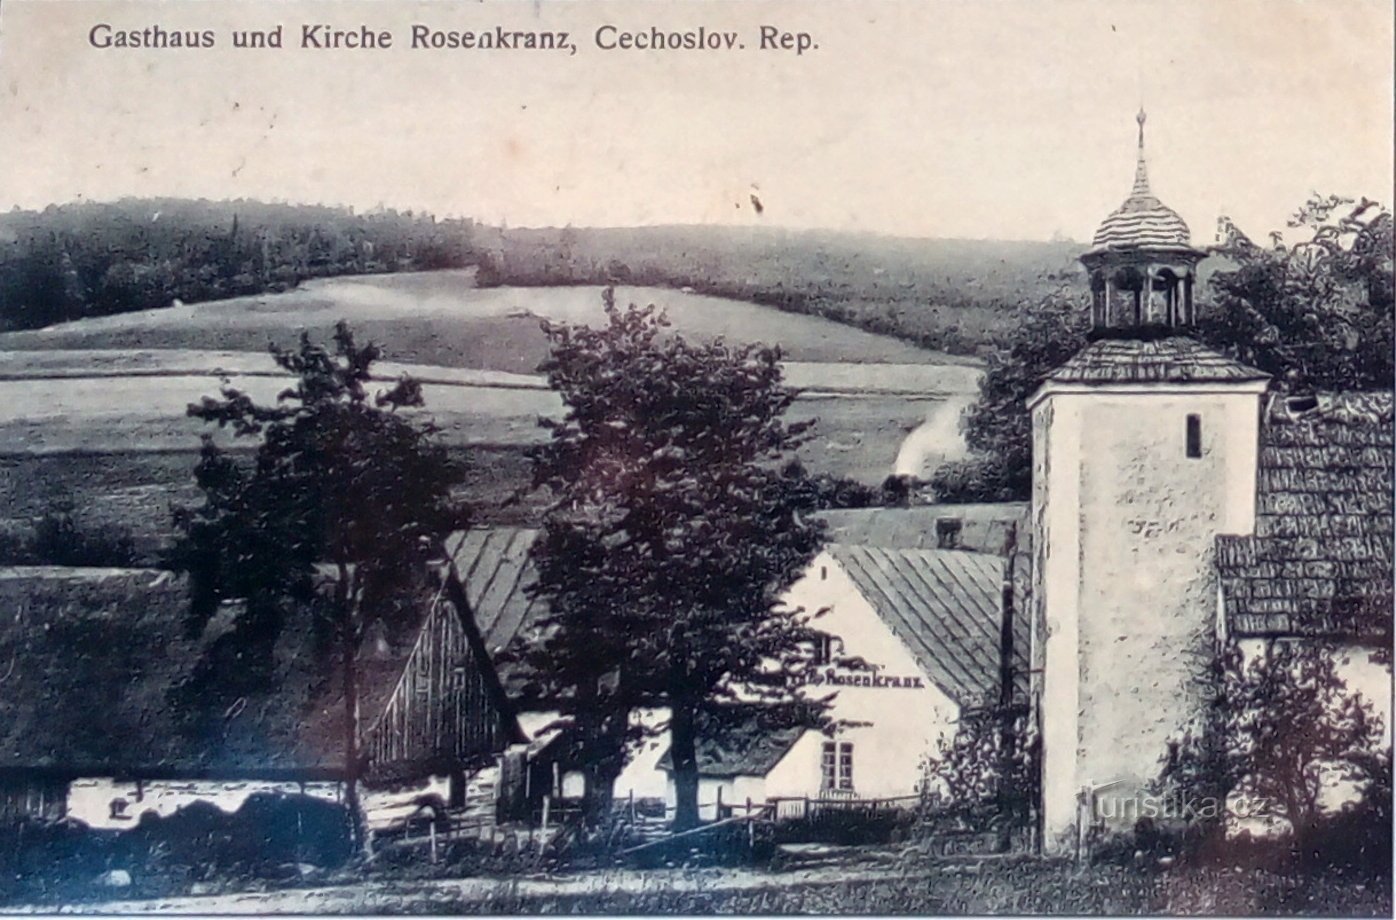 Rychlebské hory: Růženín, period photograph from a blackboard